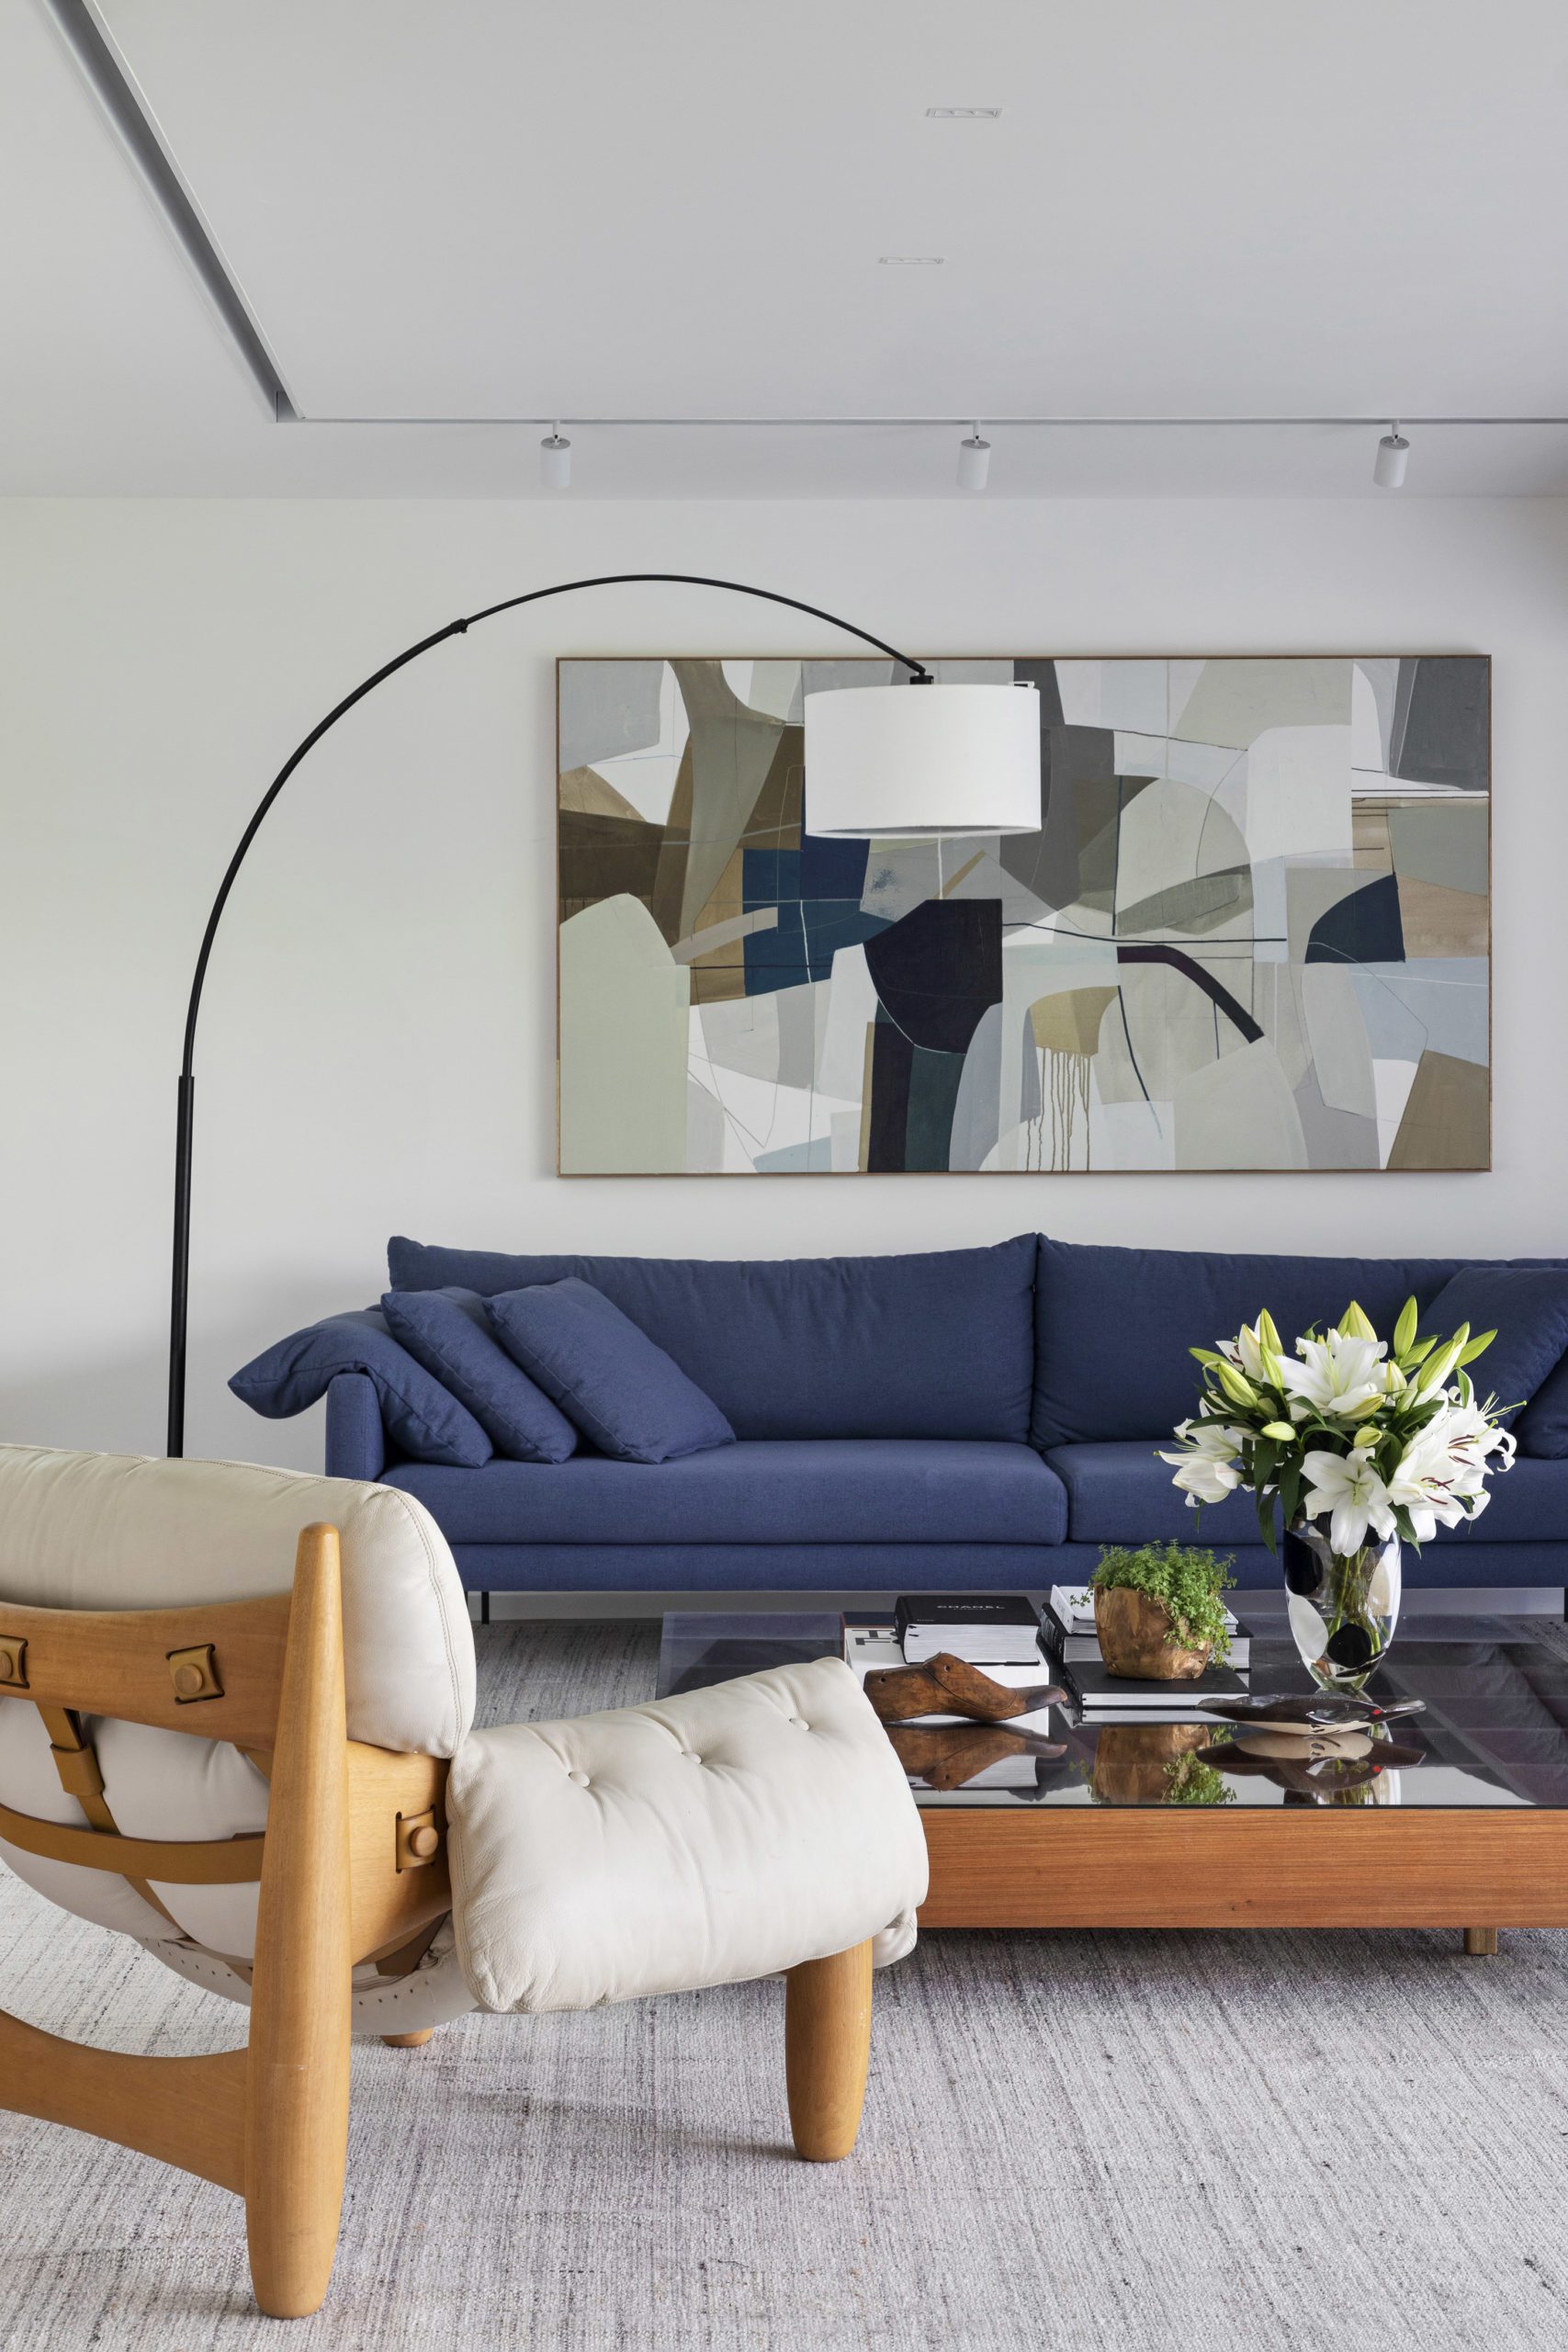 Panaggio, arquiteto,  destaca ainda algumas obras de arte, como a tela grande do artista Moacyr Travaglia, acima do sofá azul da sala de estar.